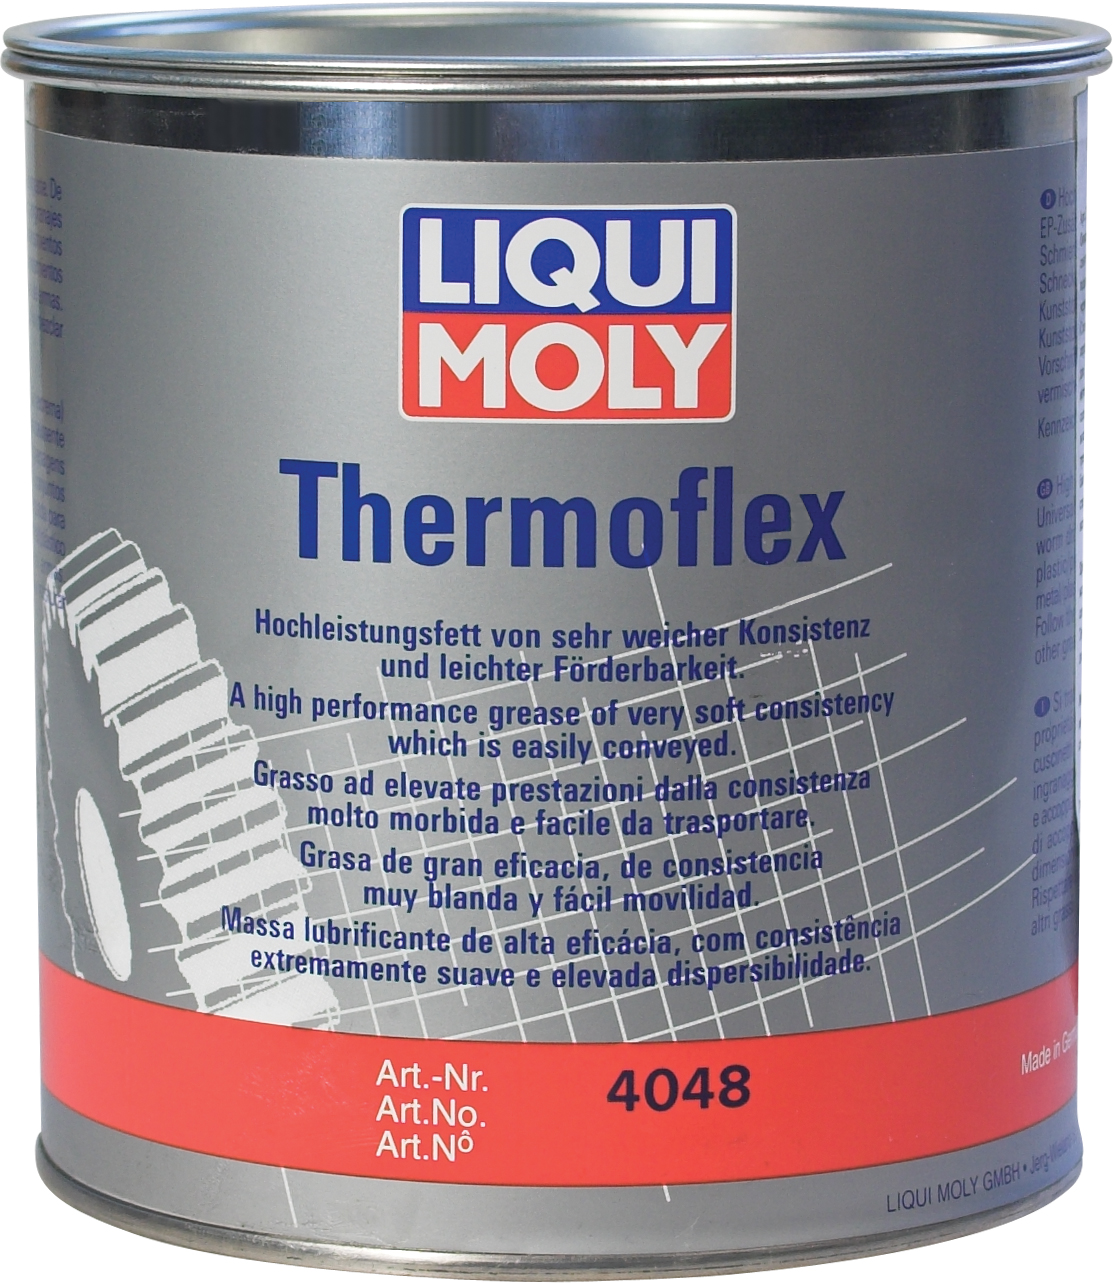 Смазка для различных приводов Thermoflex Spezialfett (1 кг)